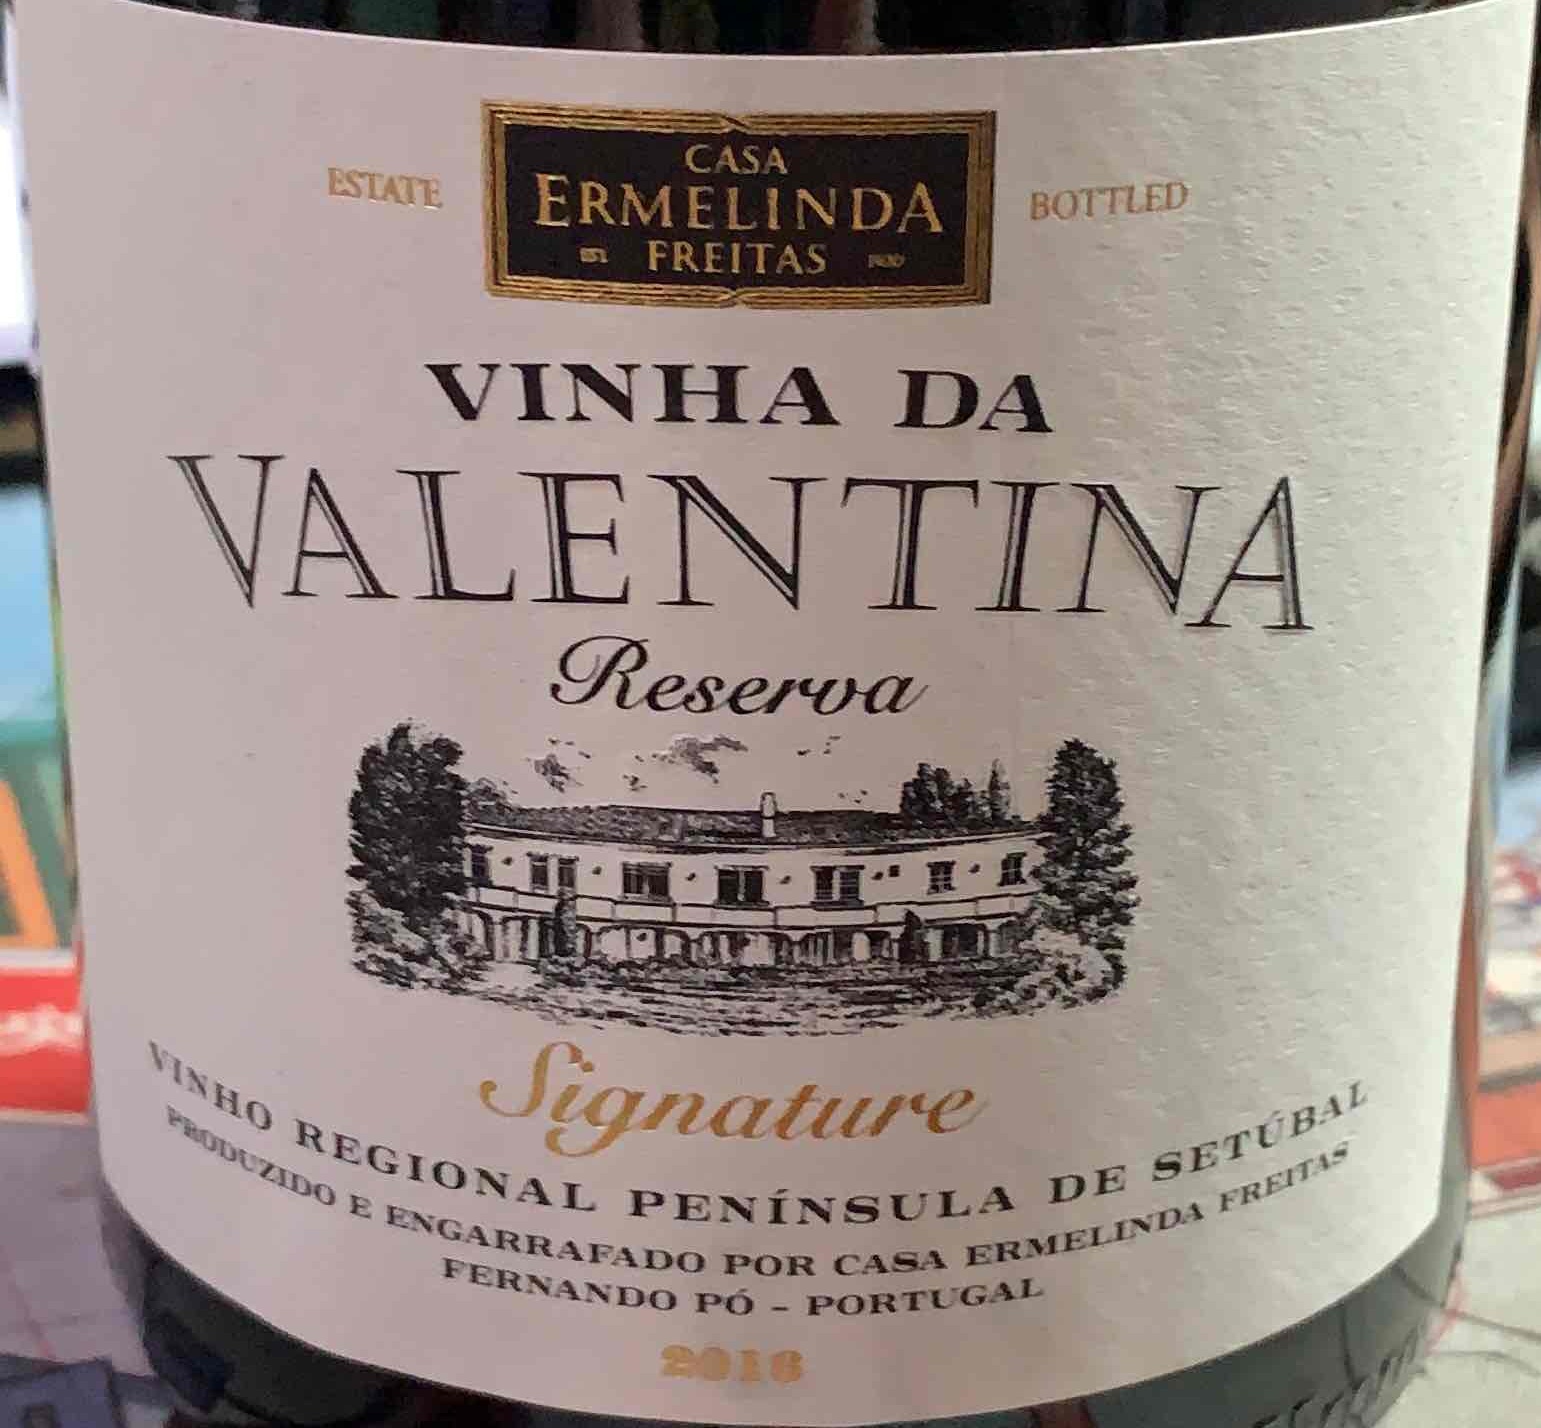 Casa Ermelinda Freitas Vinha da Valentina Signature Reserva Tinto,  Peninsula de Setubal, Portugal-埃尔梅琳达·弗雷塔斯之家酒庄葡萄酒-价格-评价-中文名-红酒世界网